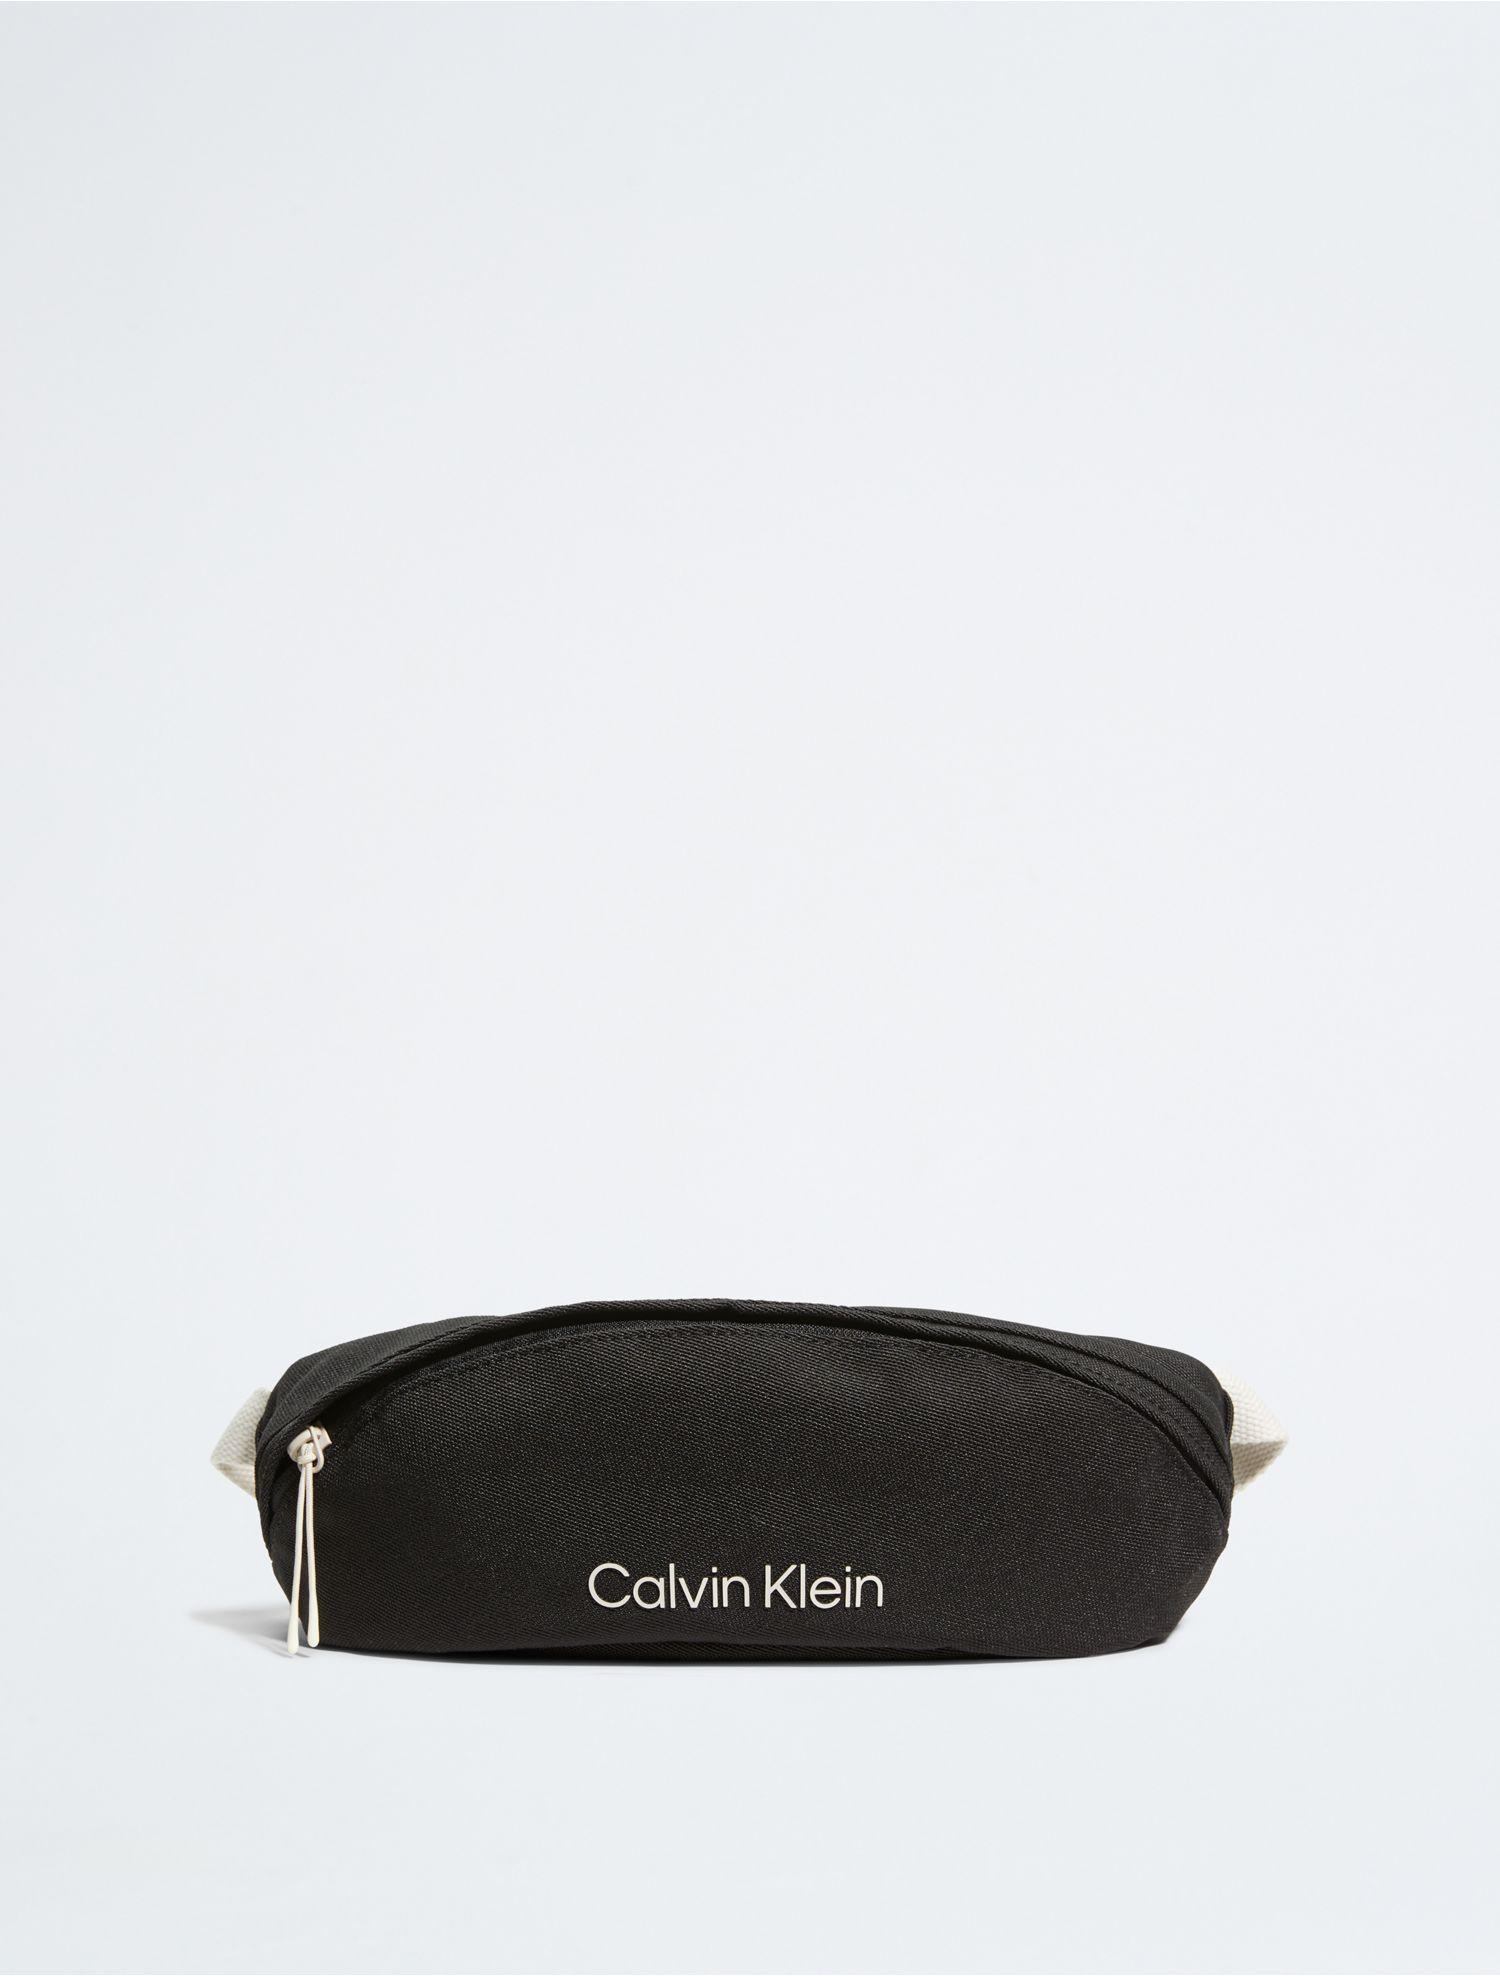 Calvin Klein Ck Sport Athletic Belt Bag in White for Men | Lyst